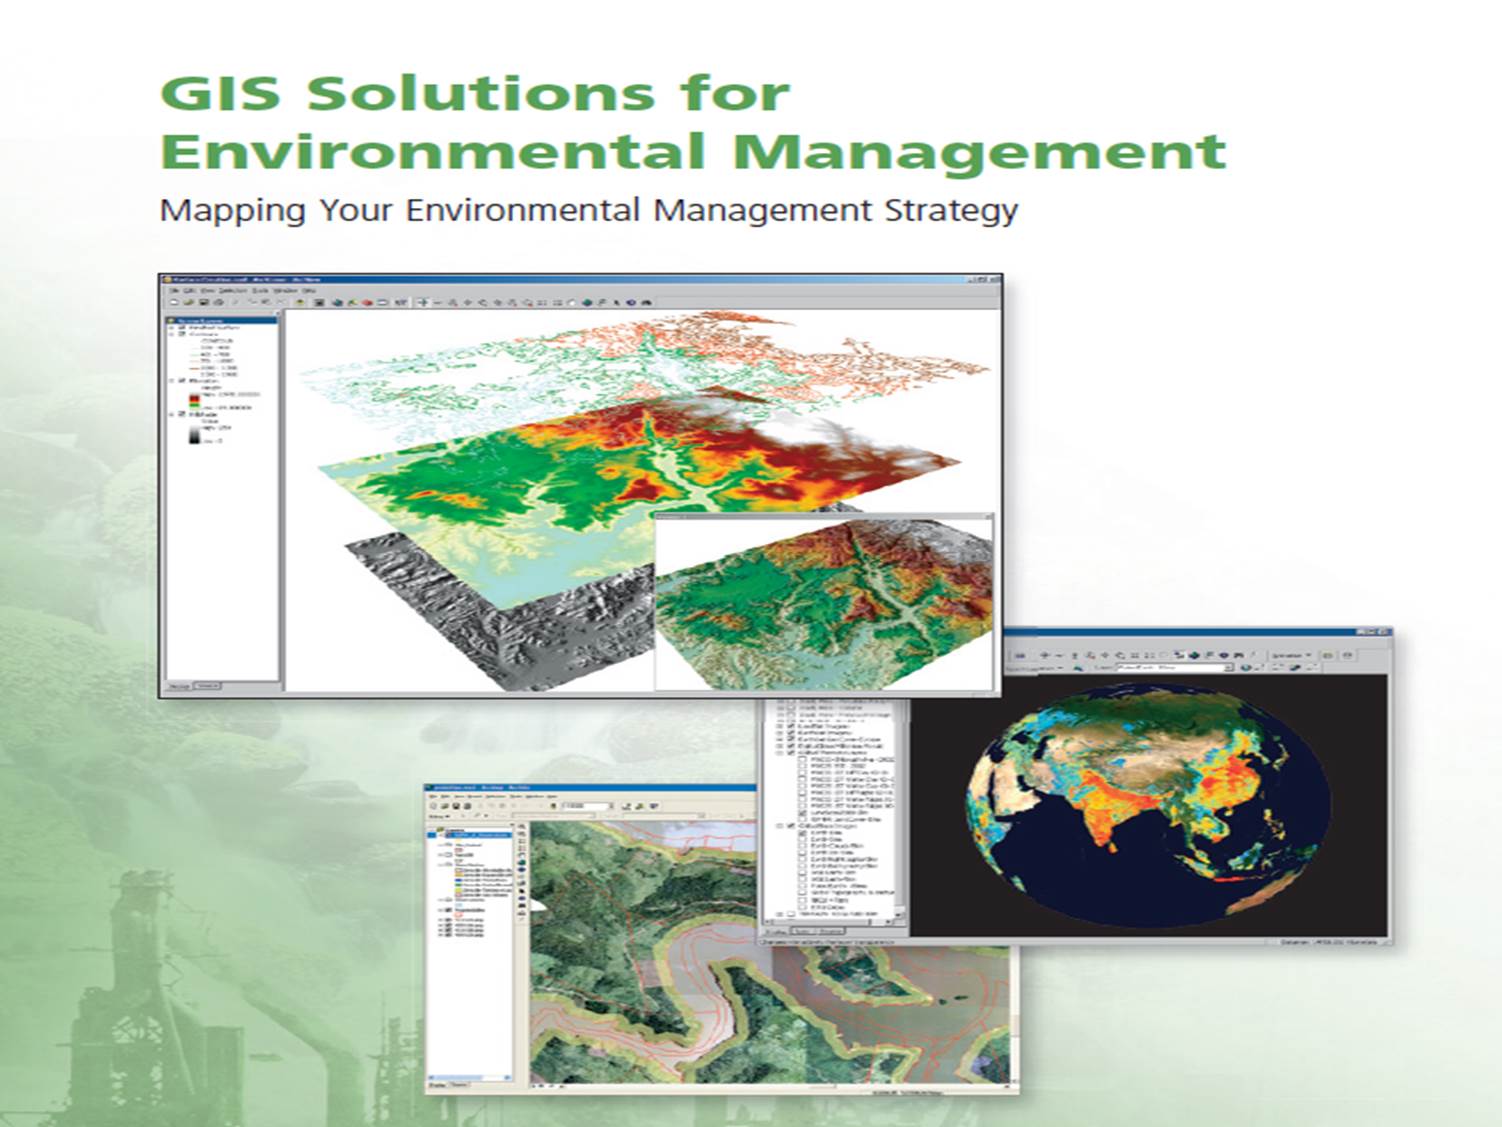 فایل پاورپوینت کاربرد GIS در مطالعات زیست محیطی